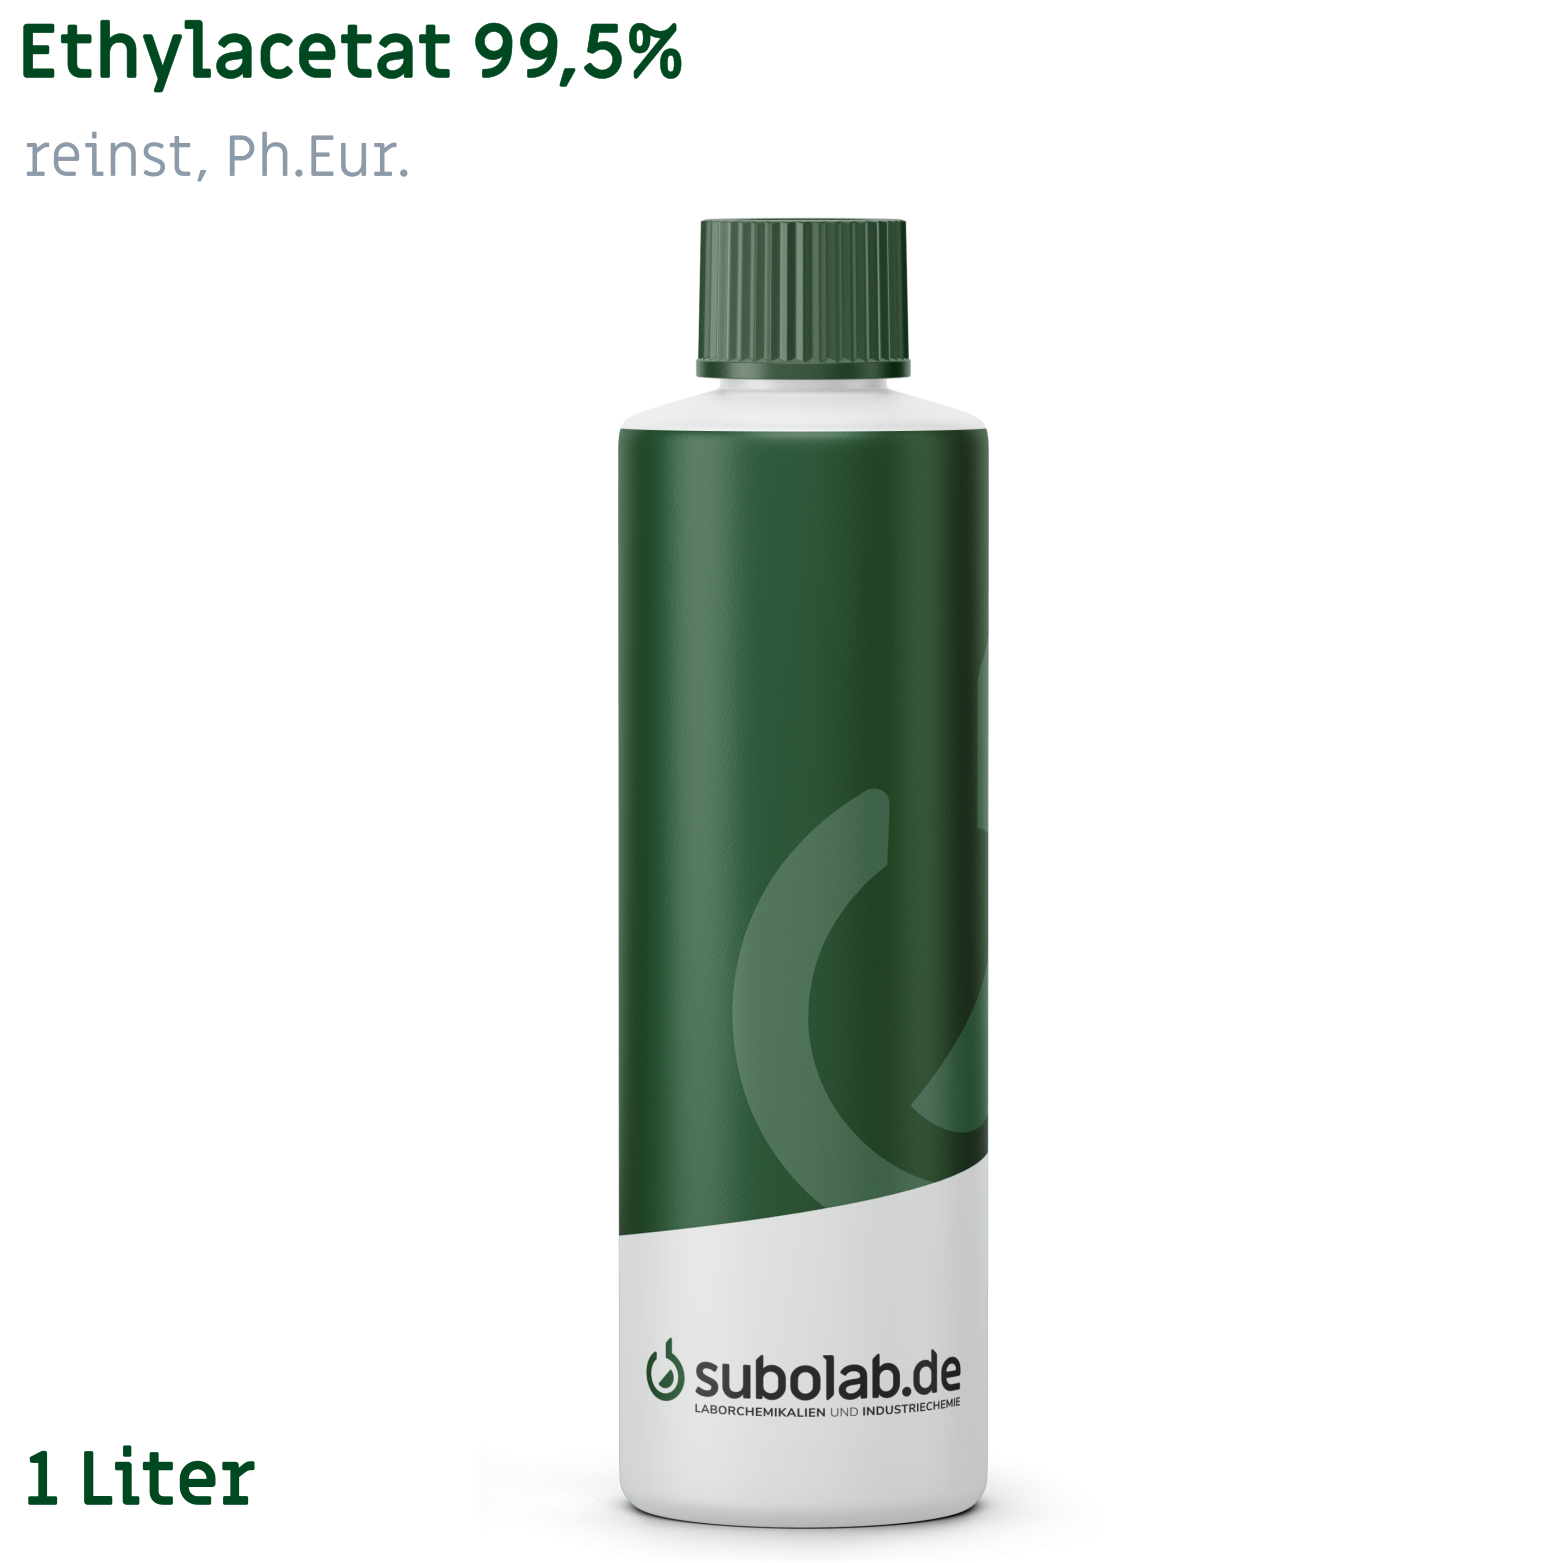 Bild von Ethylacetat 99,5% reinst, Ph.Eur. (1 Liter)